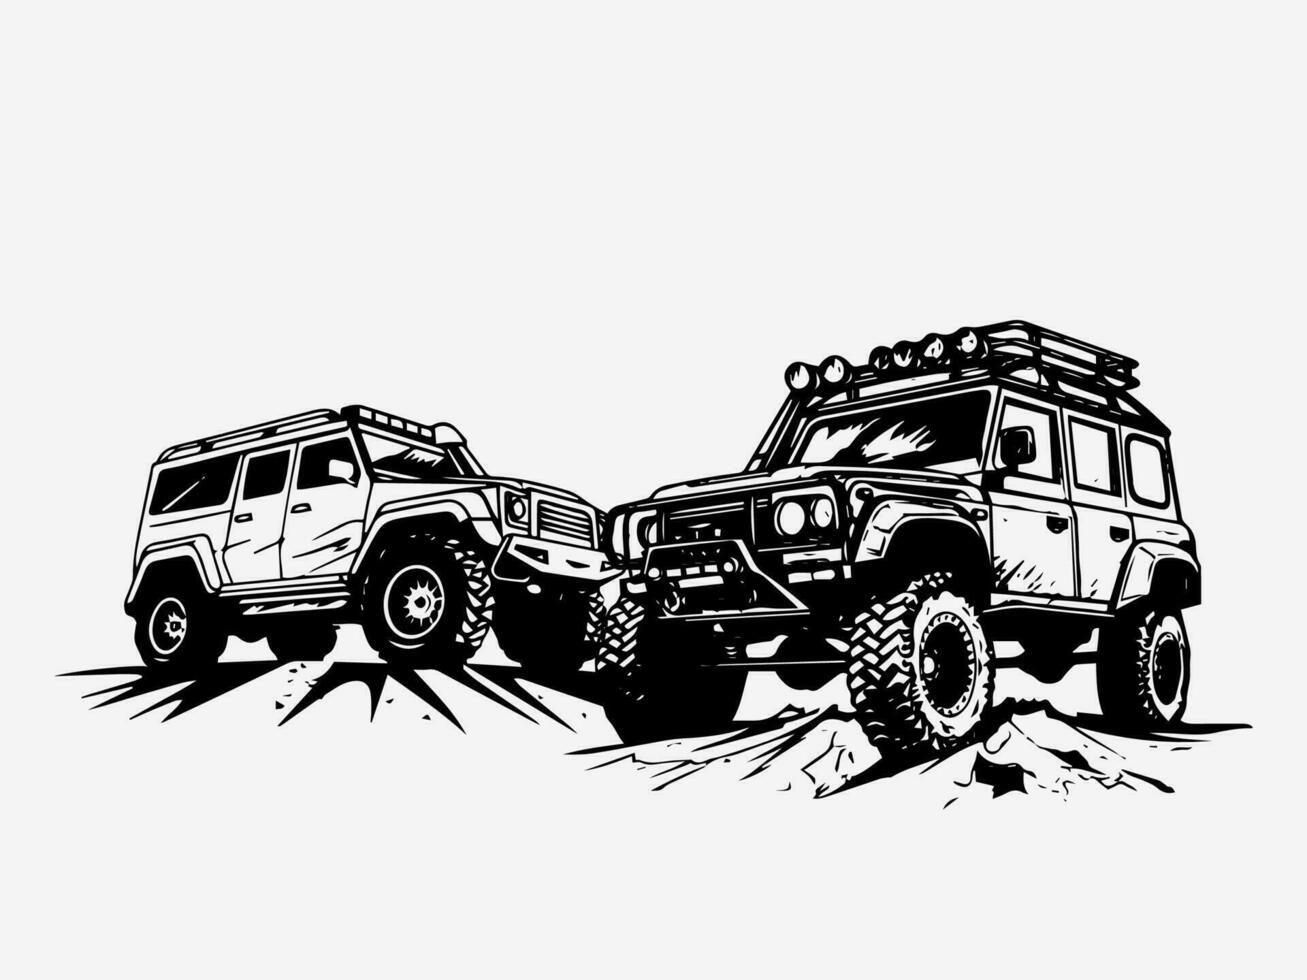 mano dibujado ilustración de un apagado la carretera auto, transporte robustez y excitación. ideal para automotor entusiastas vector